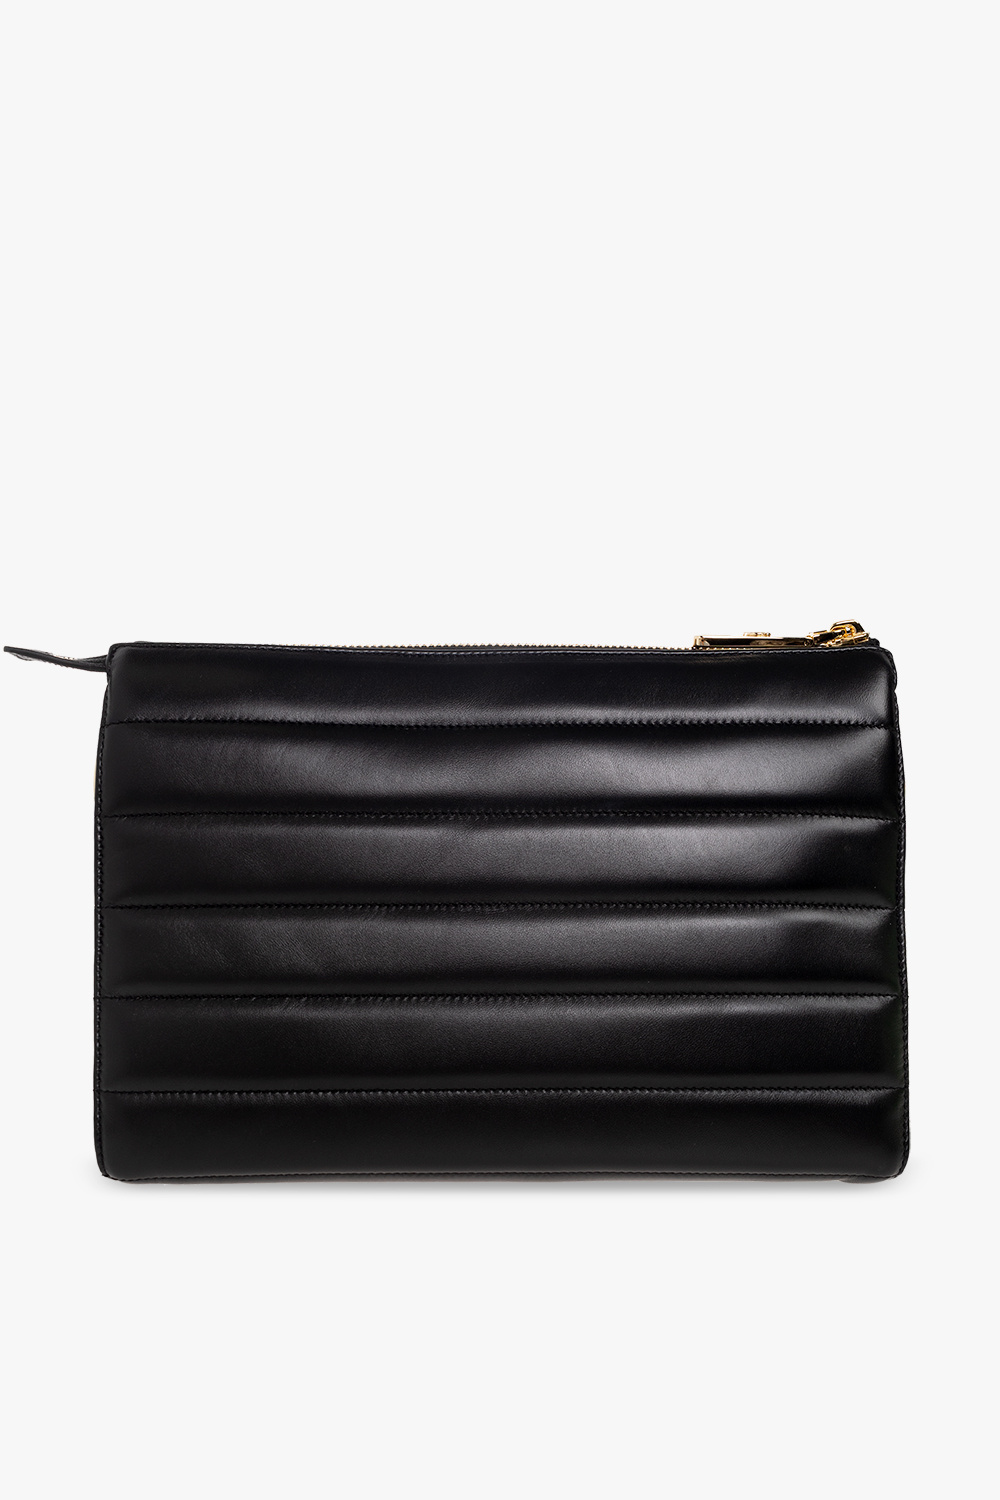 Dolce & Gabbana ‘Tris Medium’ shoulder bag